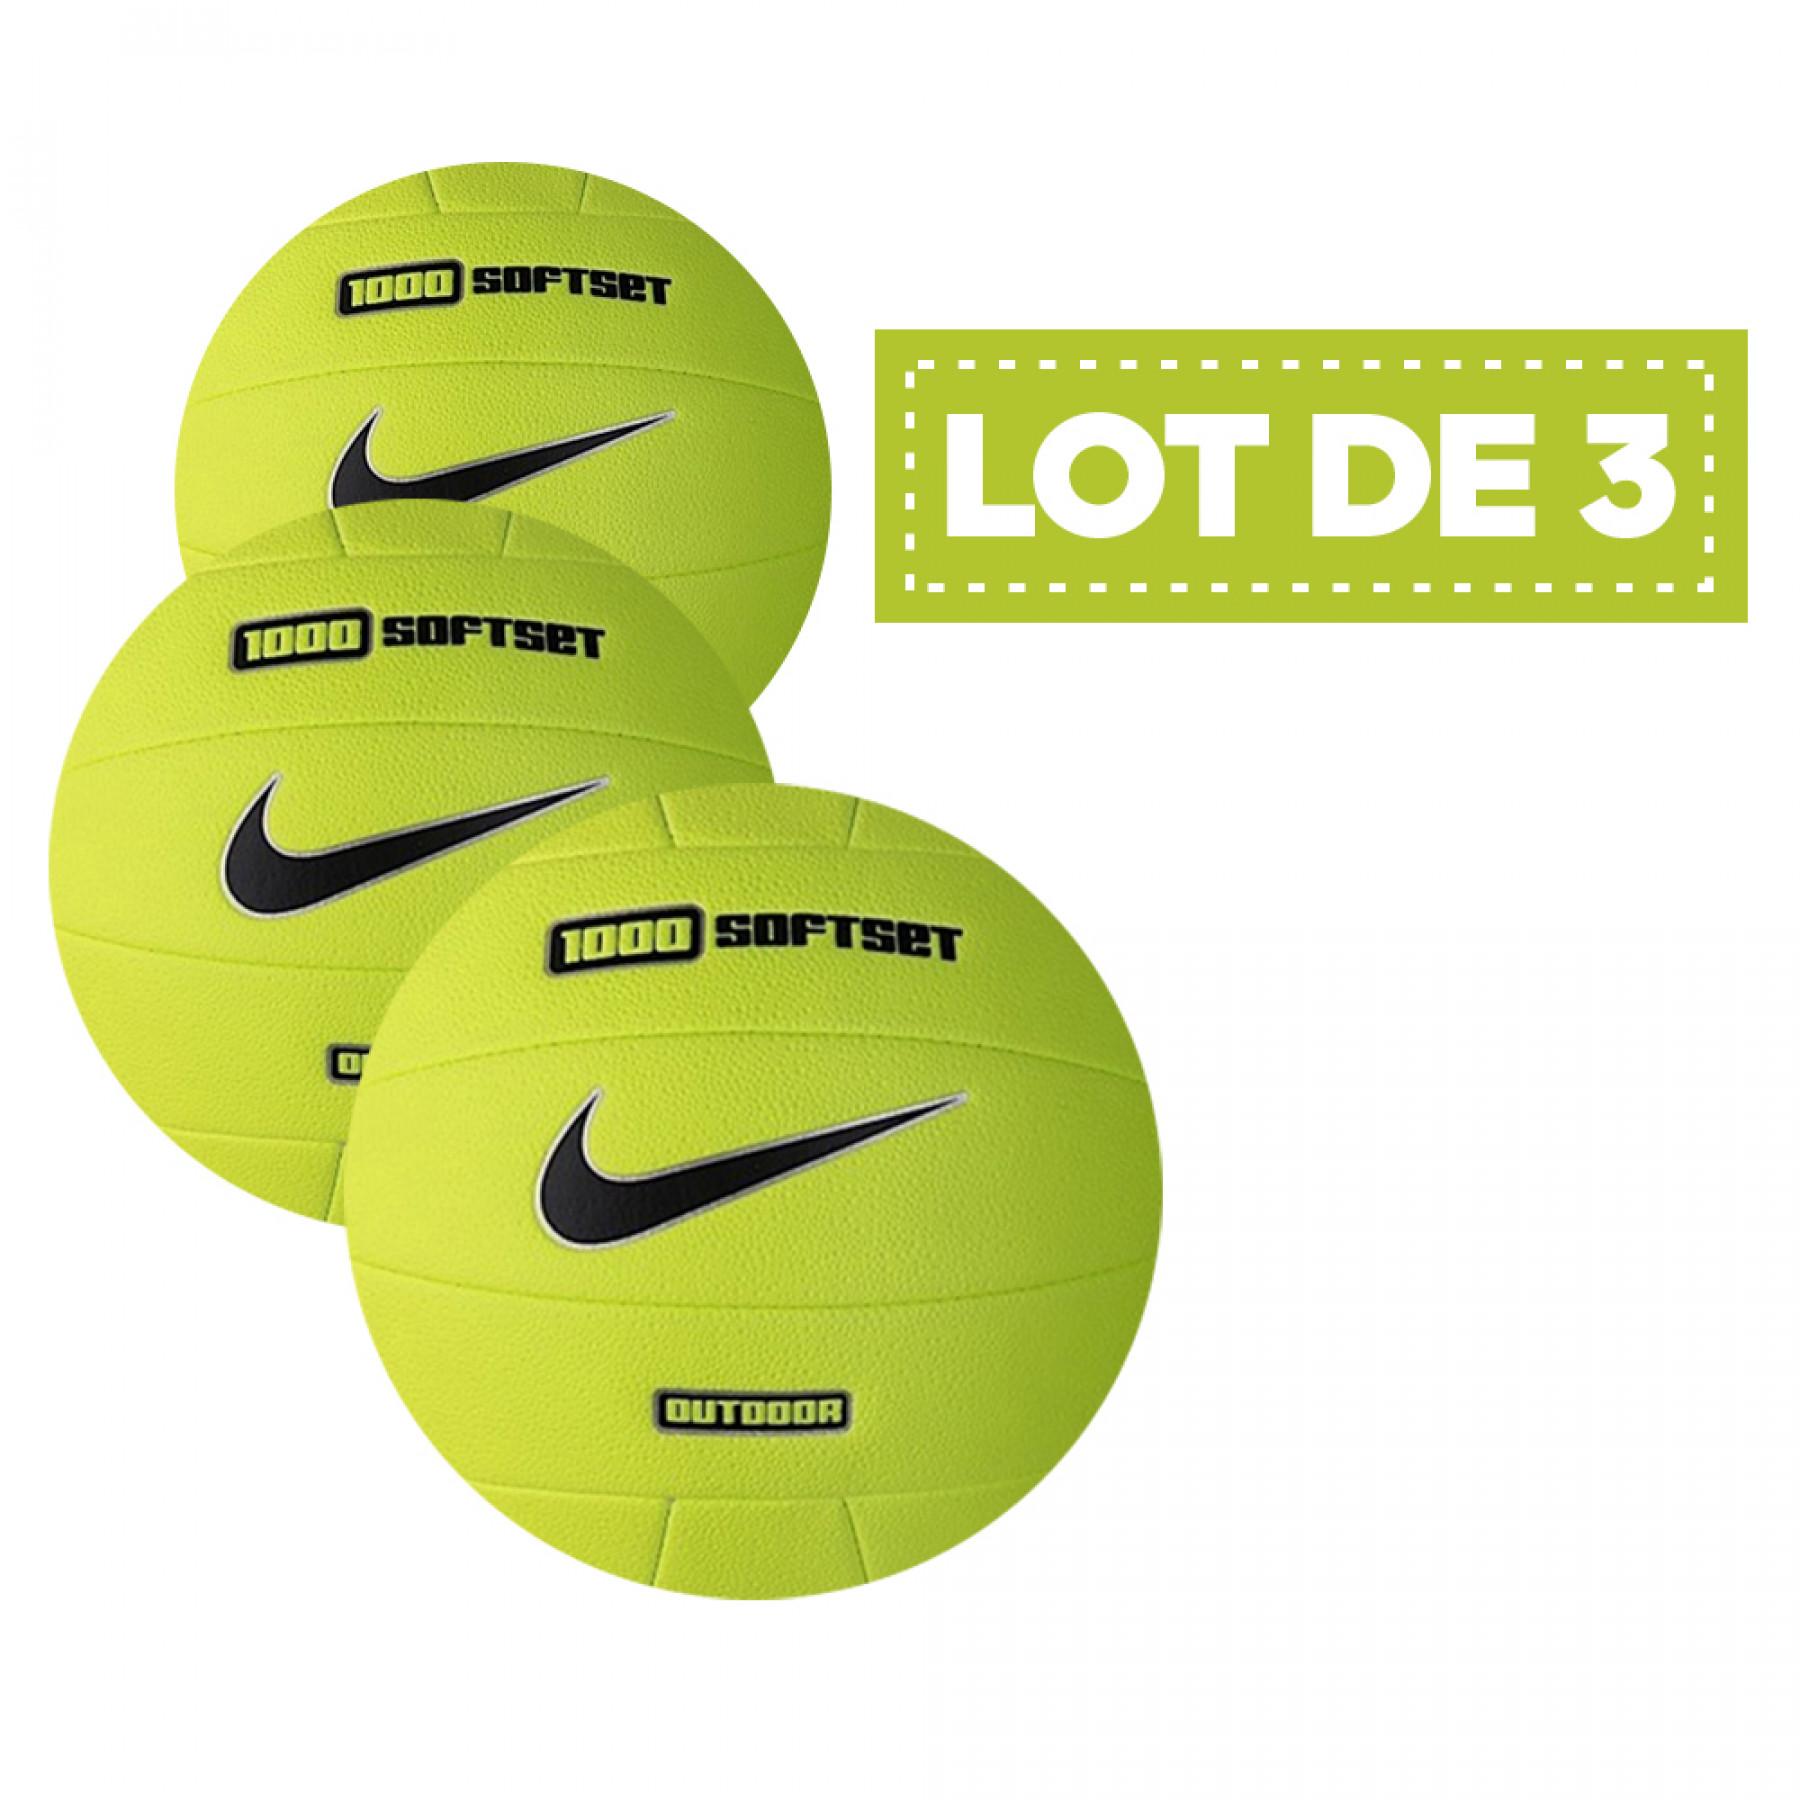 Förpackning med 3 ballonger Nike 1000 softset outdoor jaune fluo